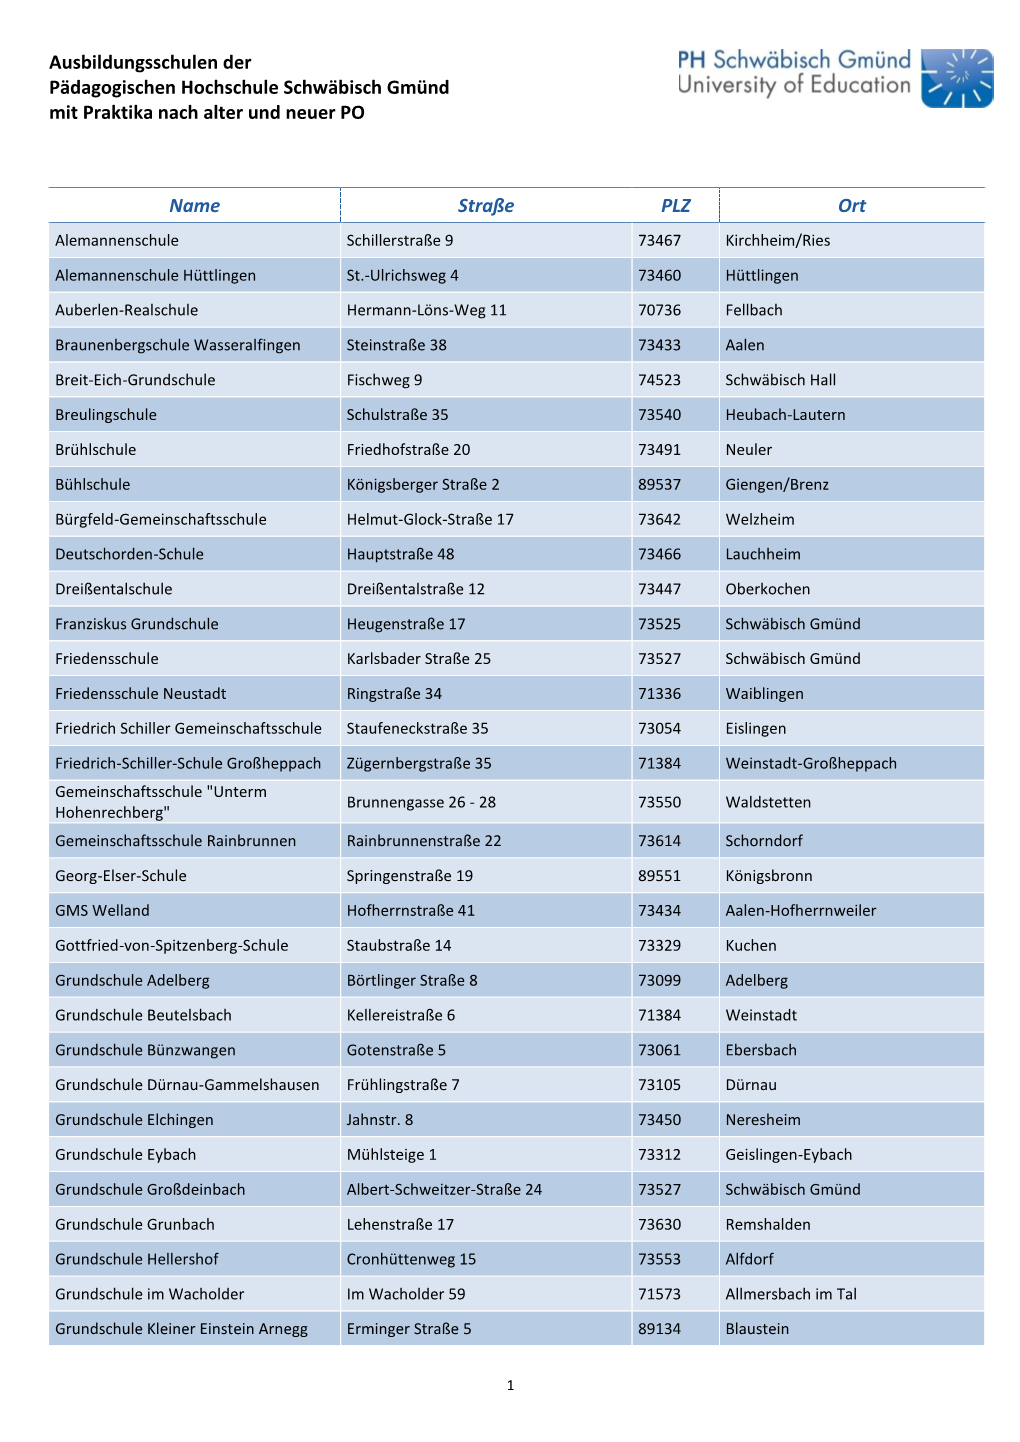 Liste Ausbildungsschulen Alte Und Neue PO